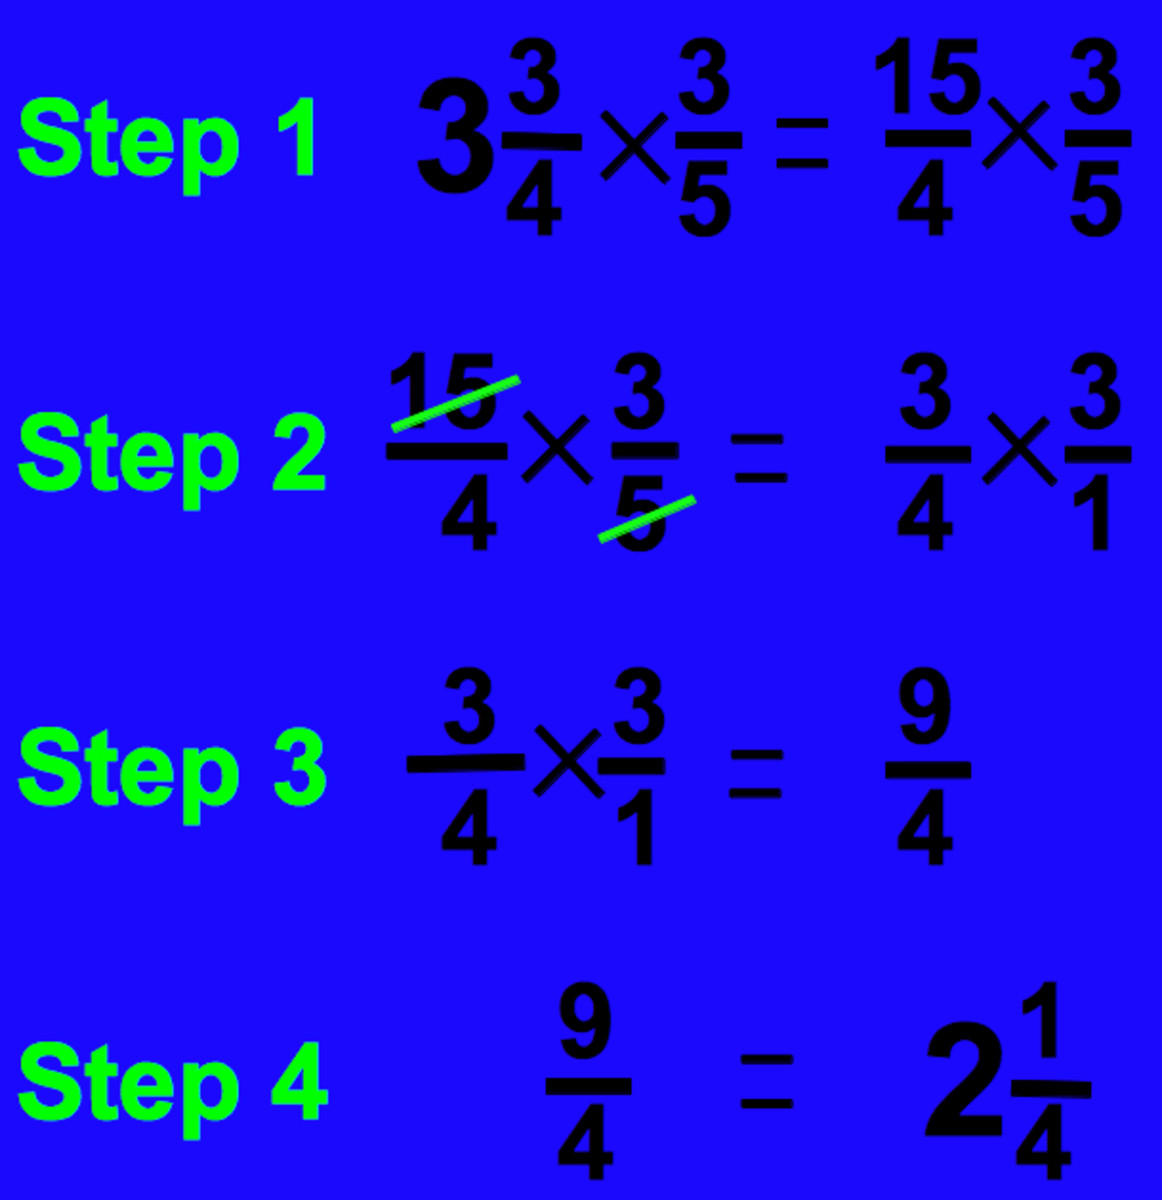 multiplication-chart-for-5-dastvp